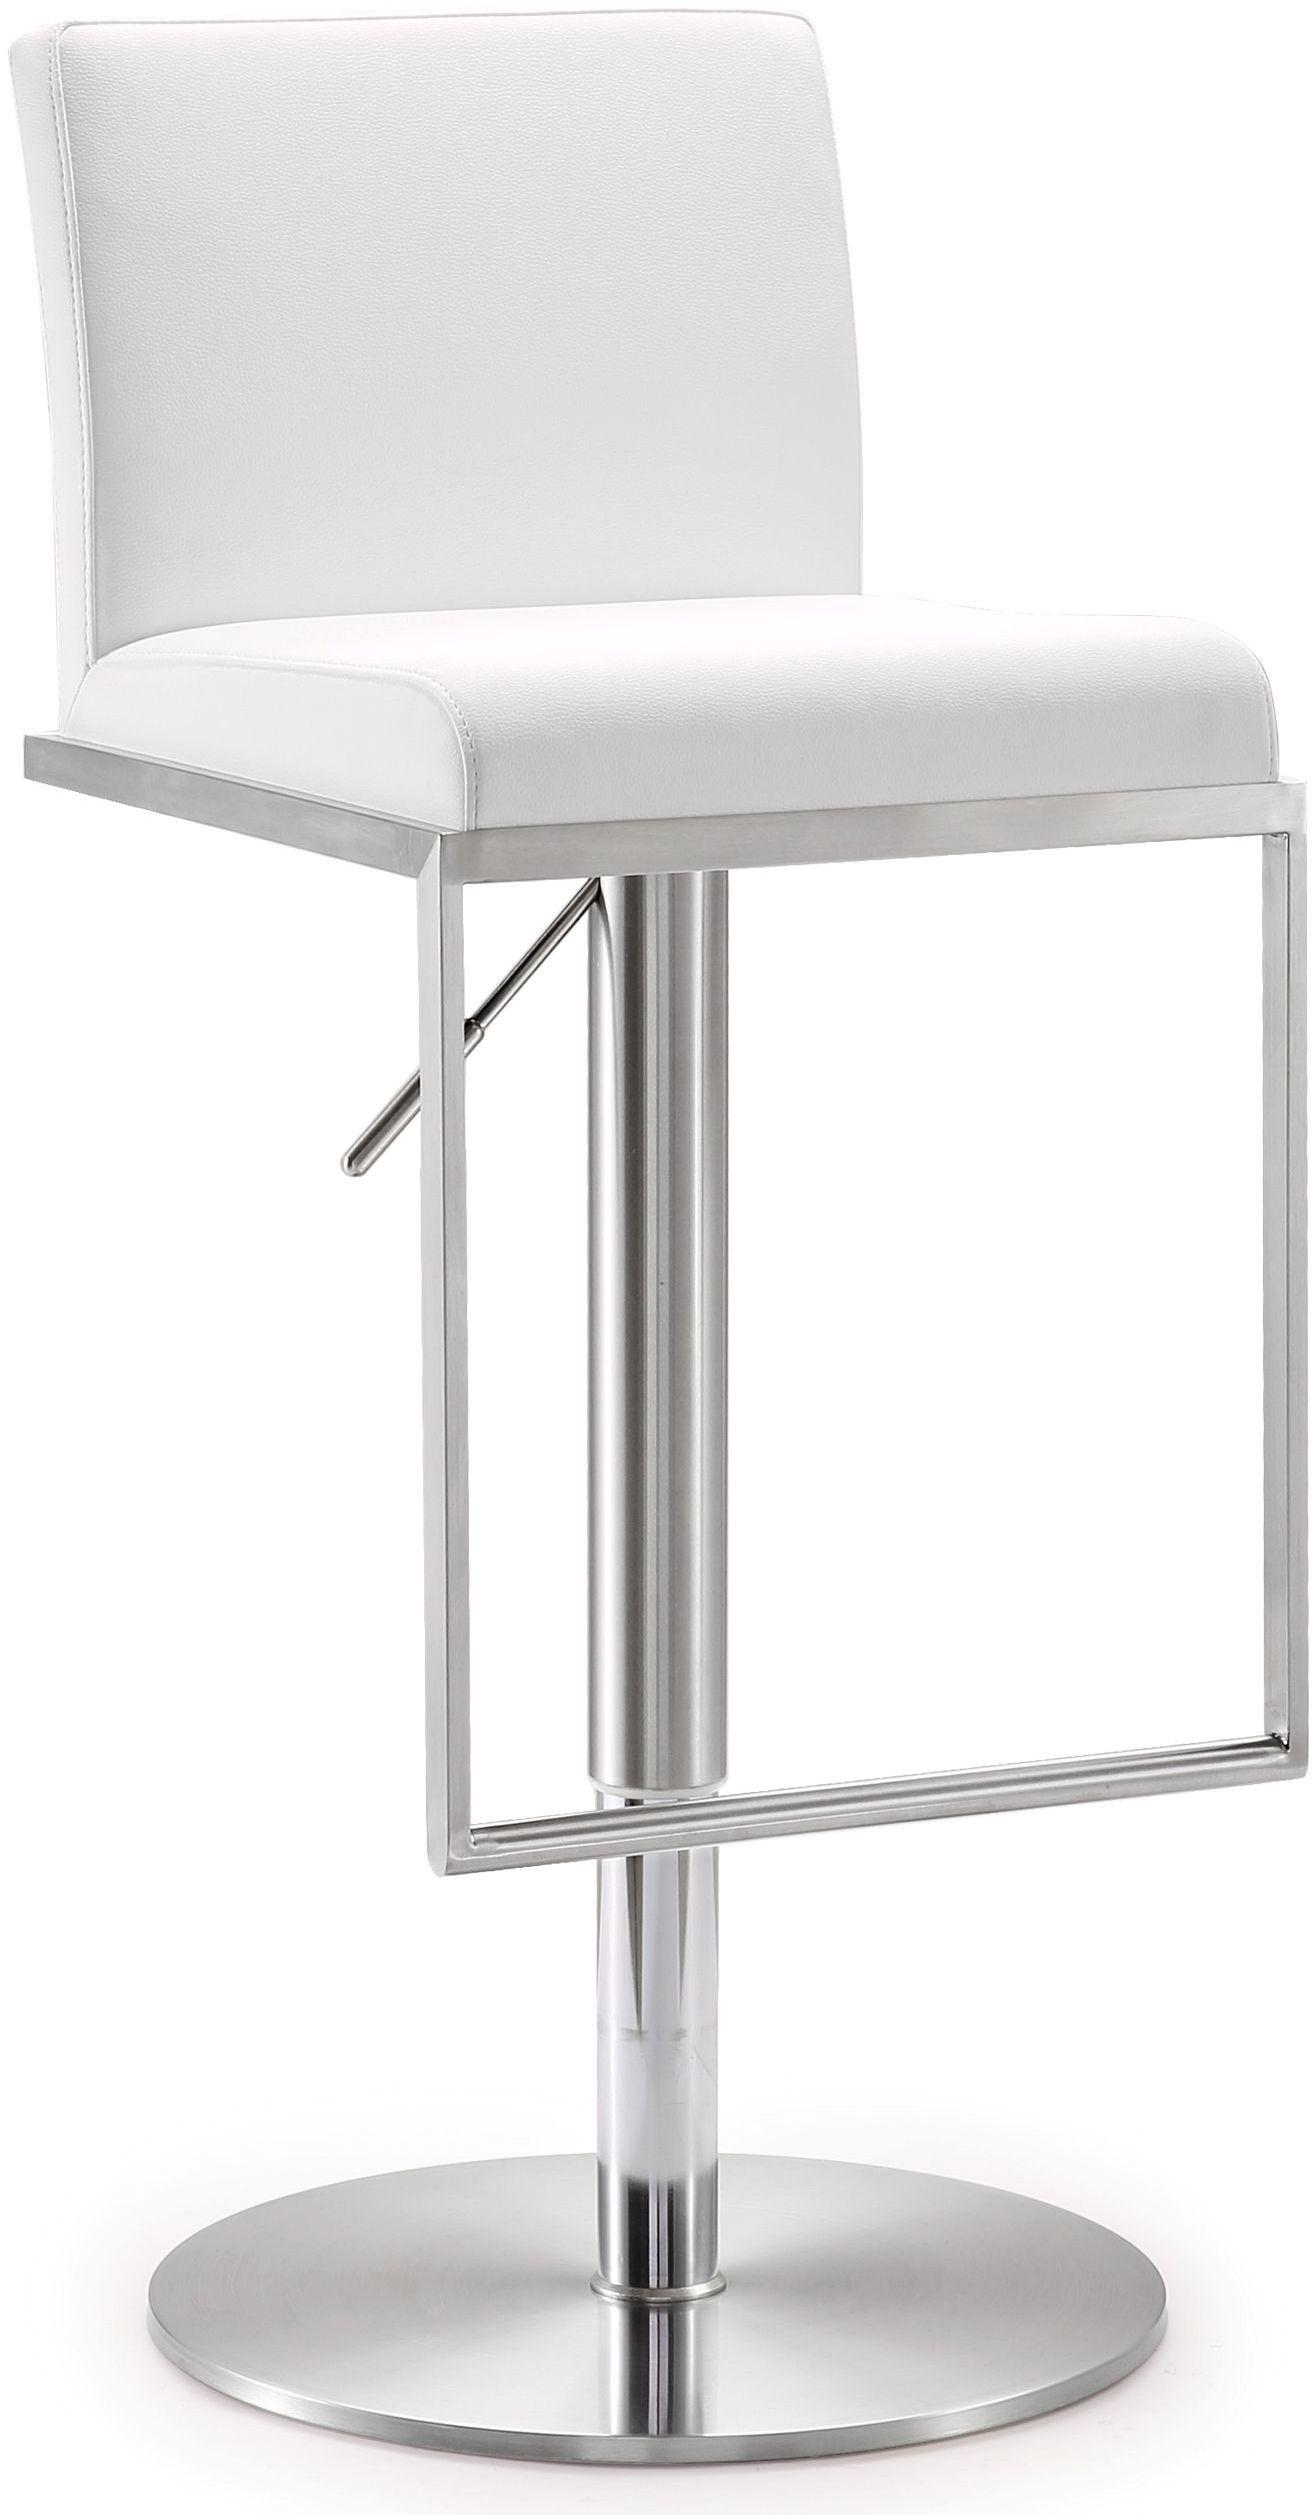 Tov Furniture Stools - Amalfi White Stainless Steel Adjustable Barstool